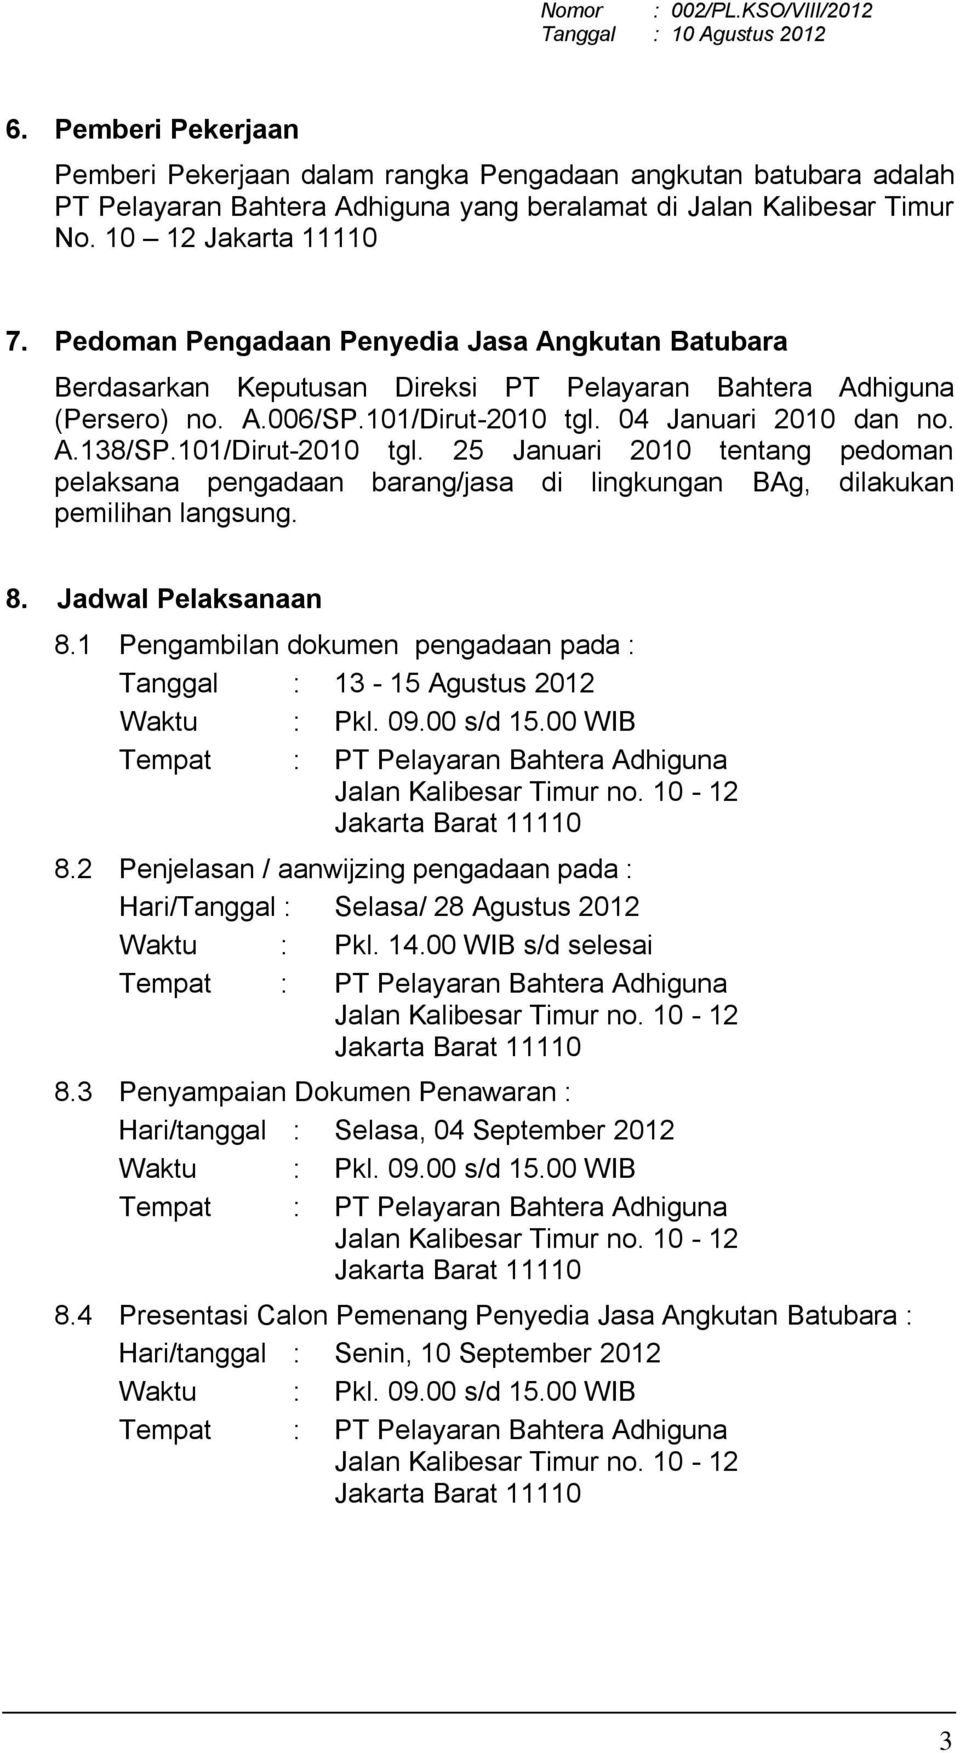 Detail Contoh Surat Perjanjian Kerjasama Jasa Angkutan Batubara Nomer 47